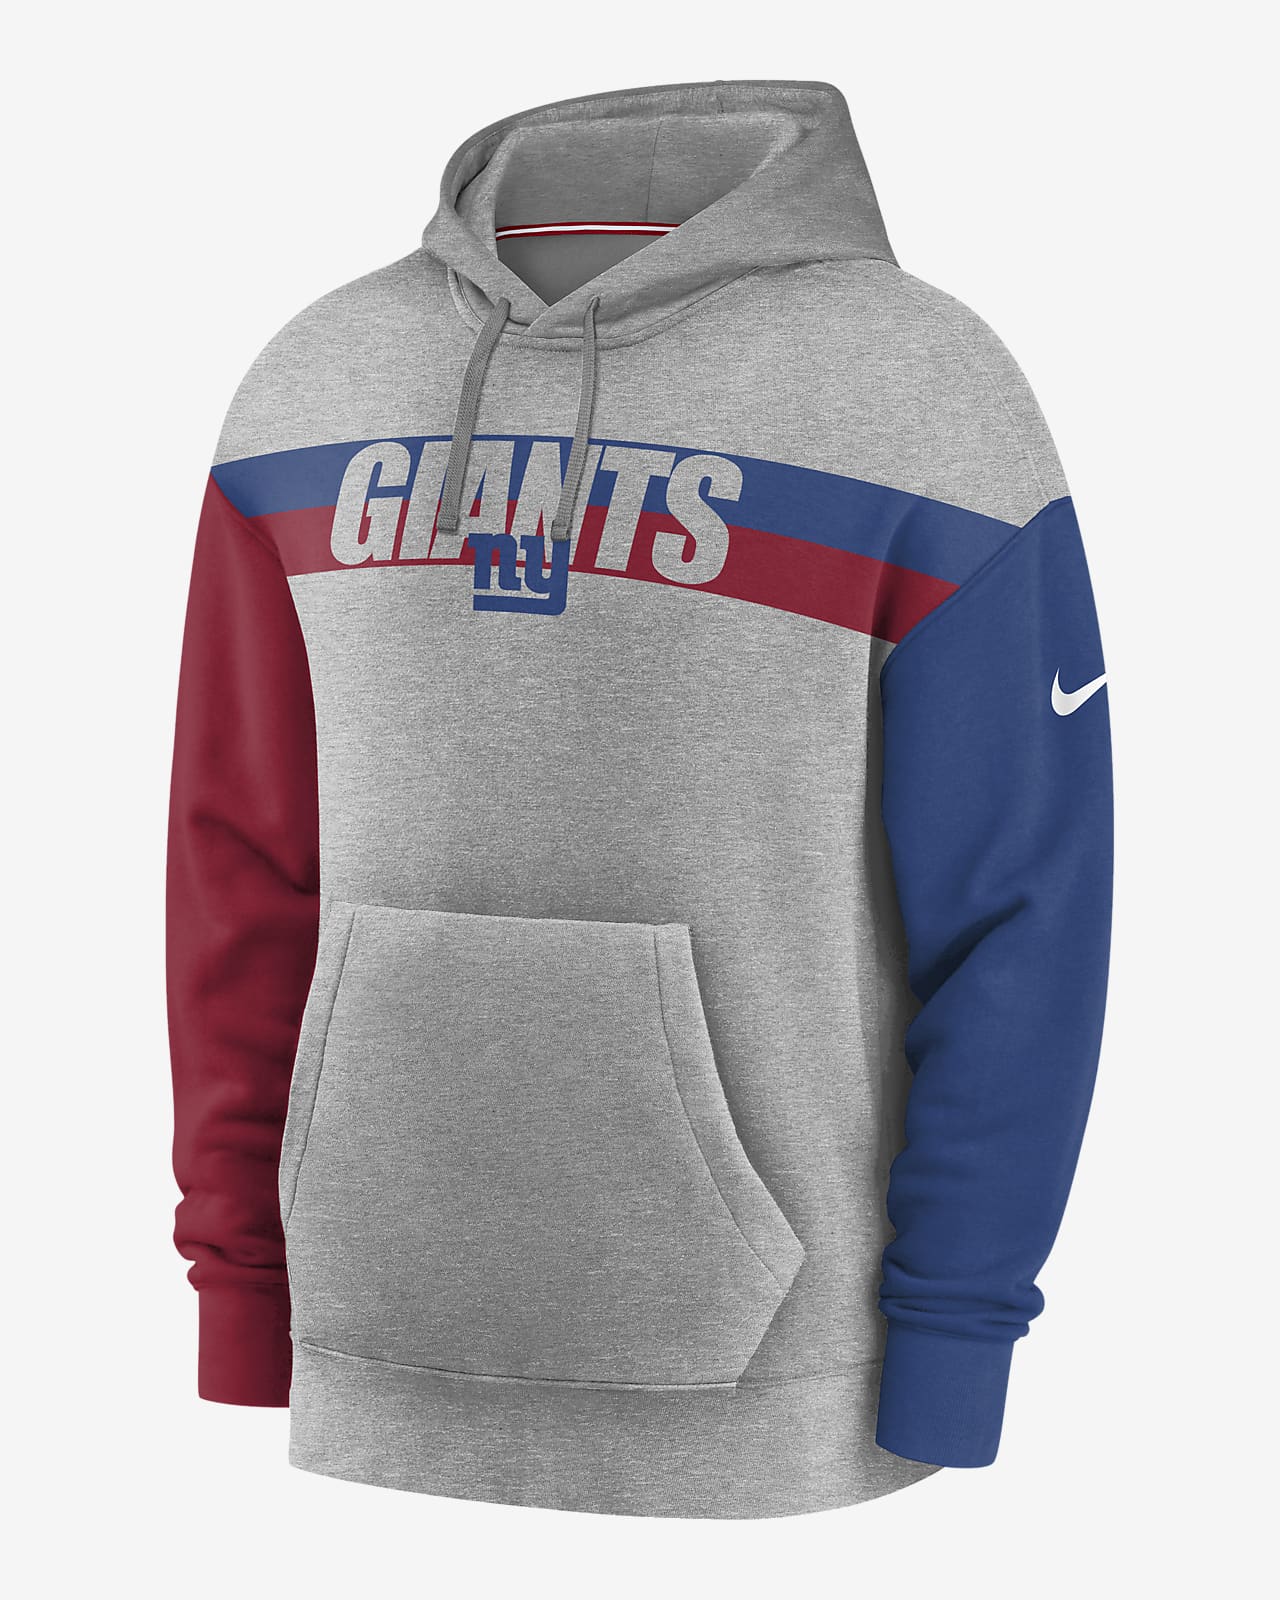 nfl giants hoodie